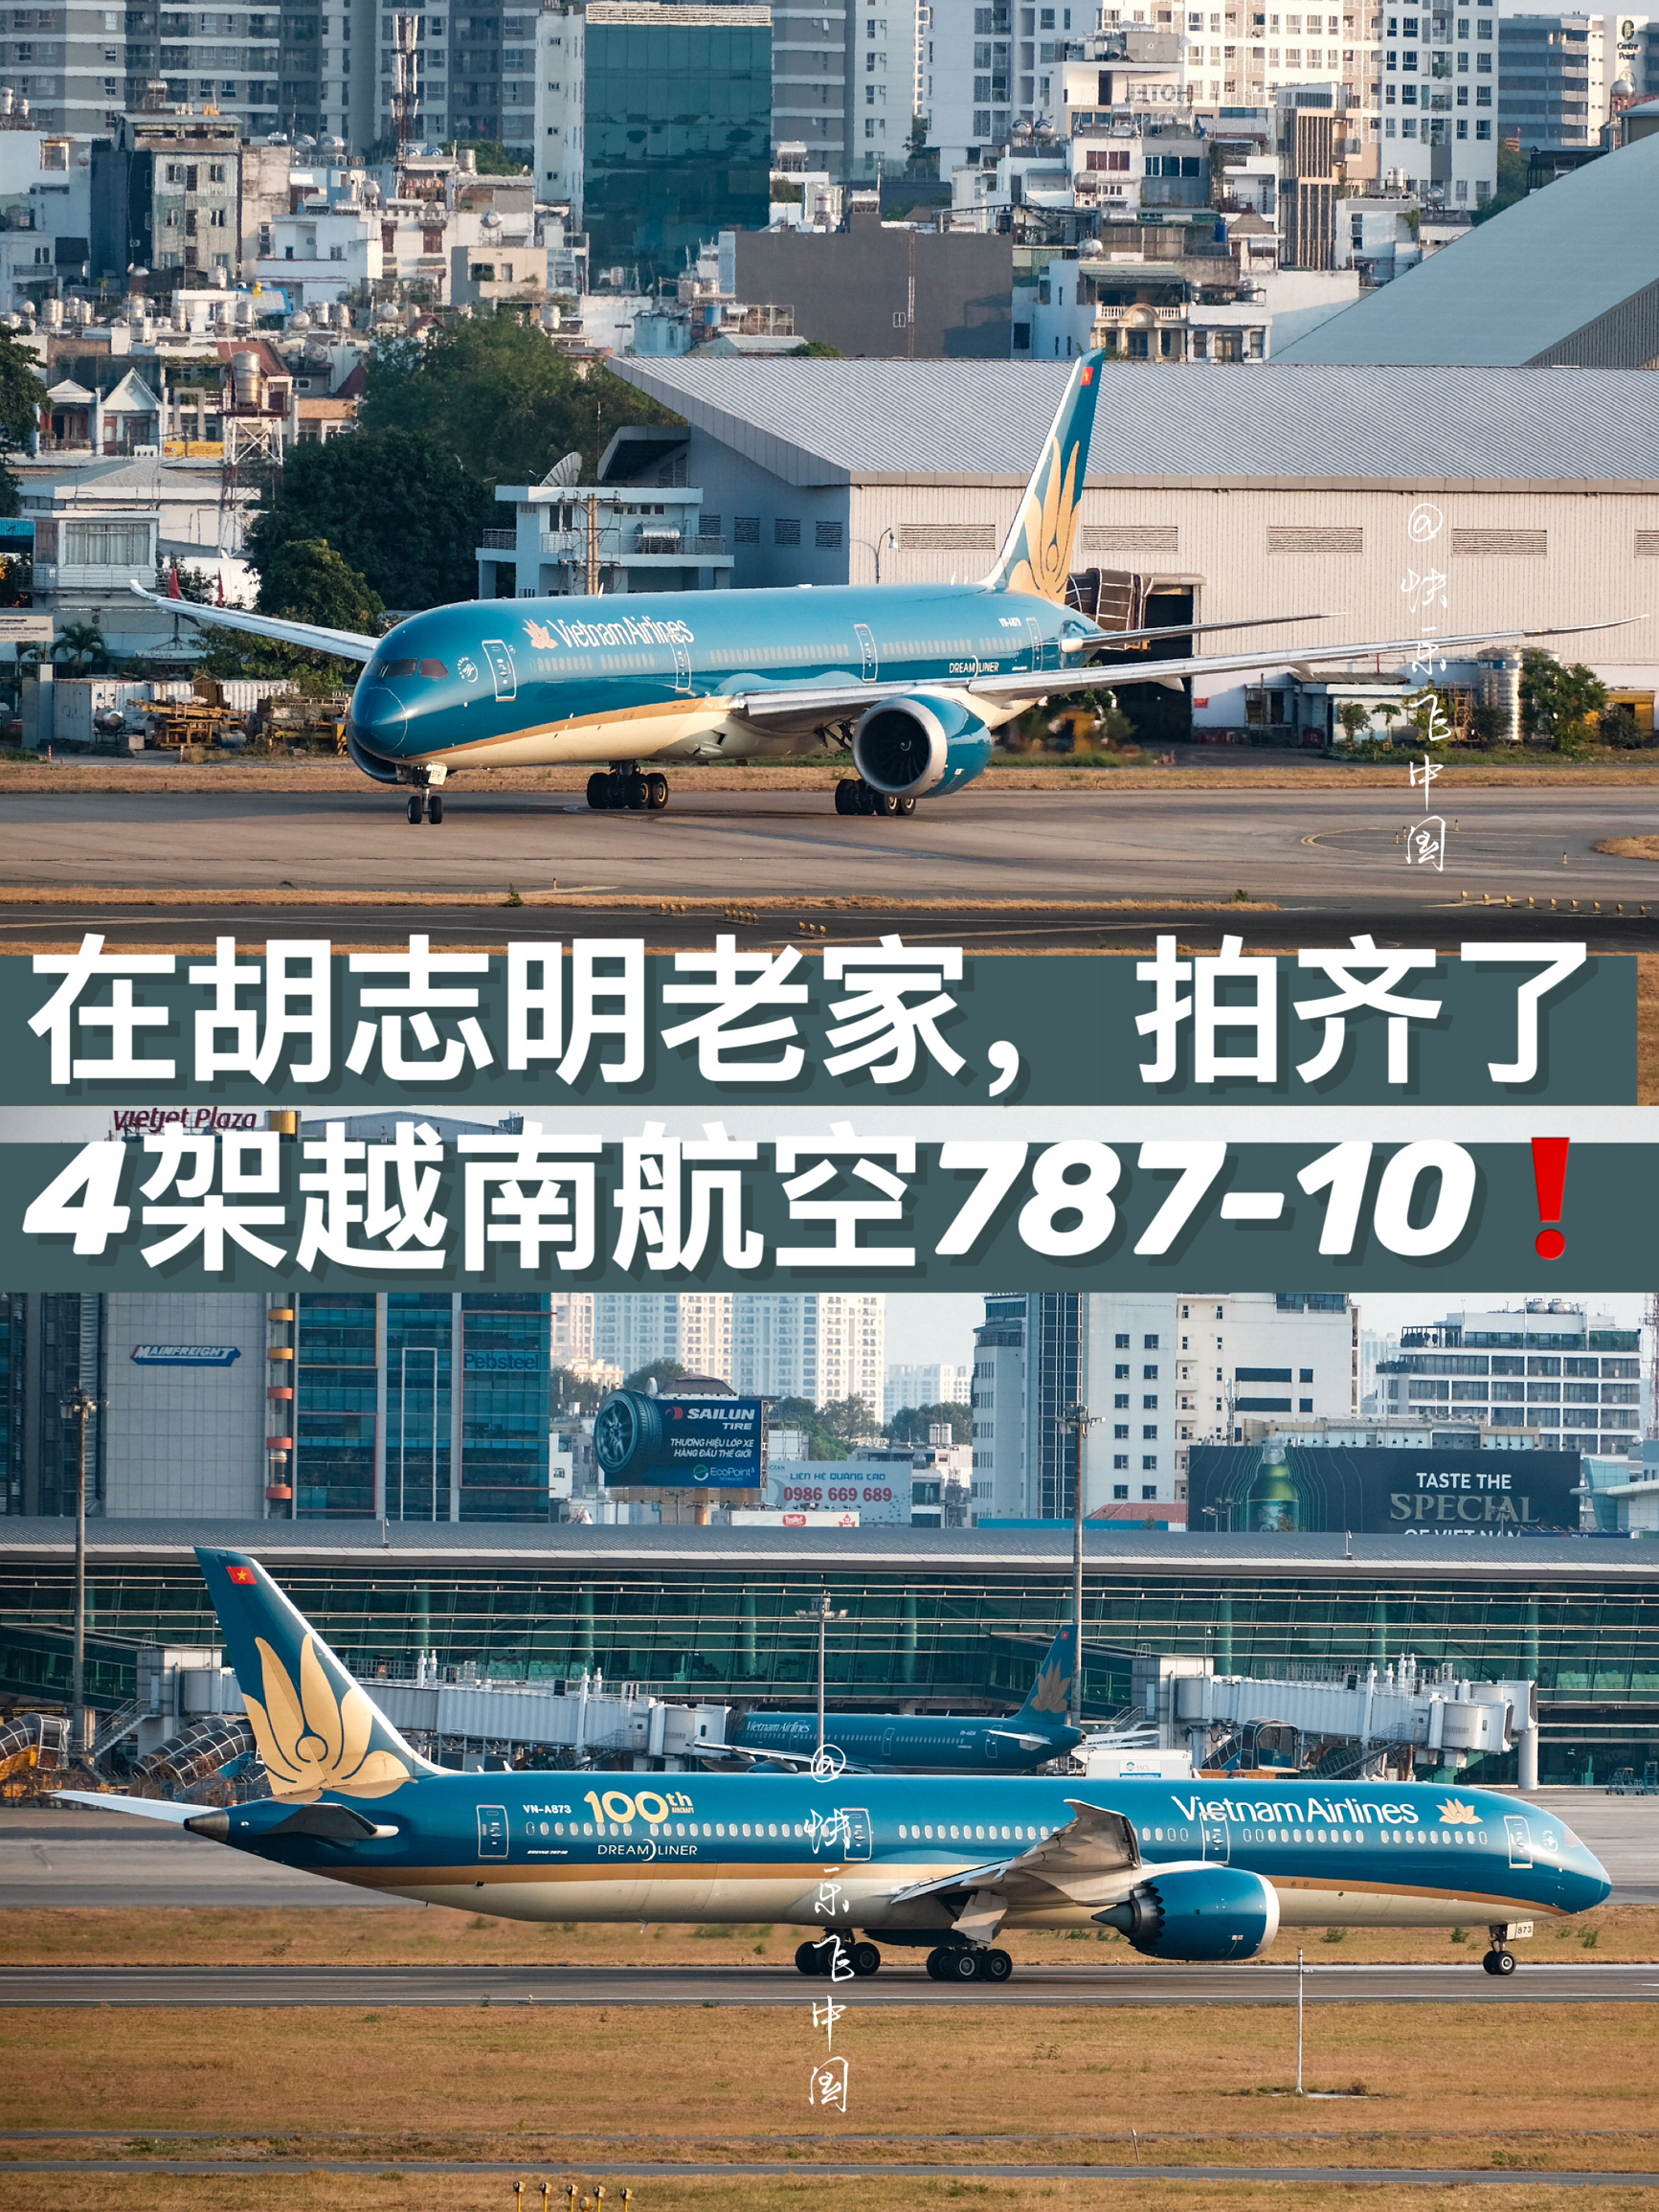 亚洲第四家运营787-10飞机，是越南航空❗️